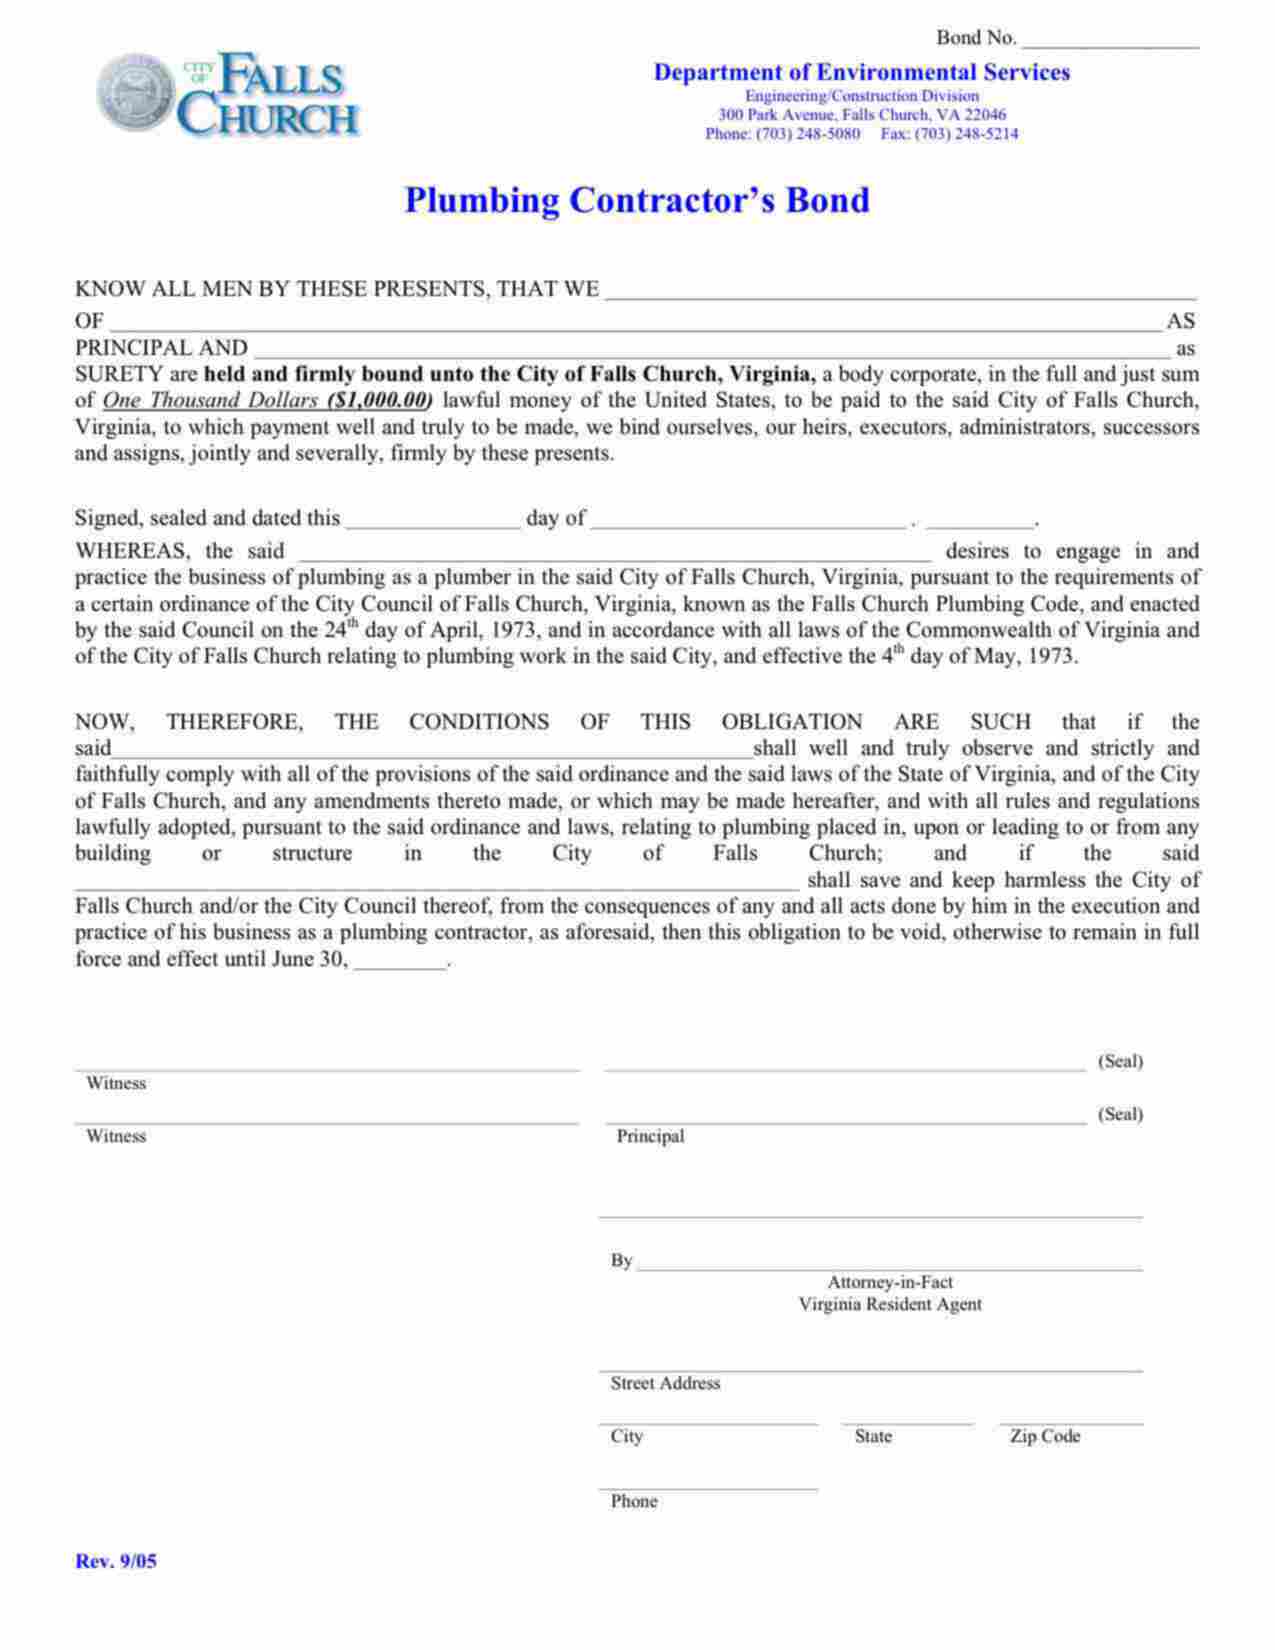 Virginia Plumbing Contractor Bond Form